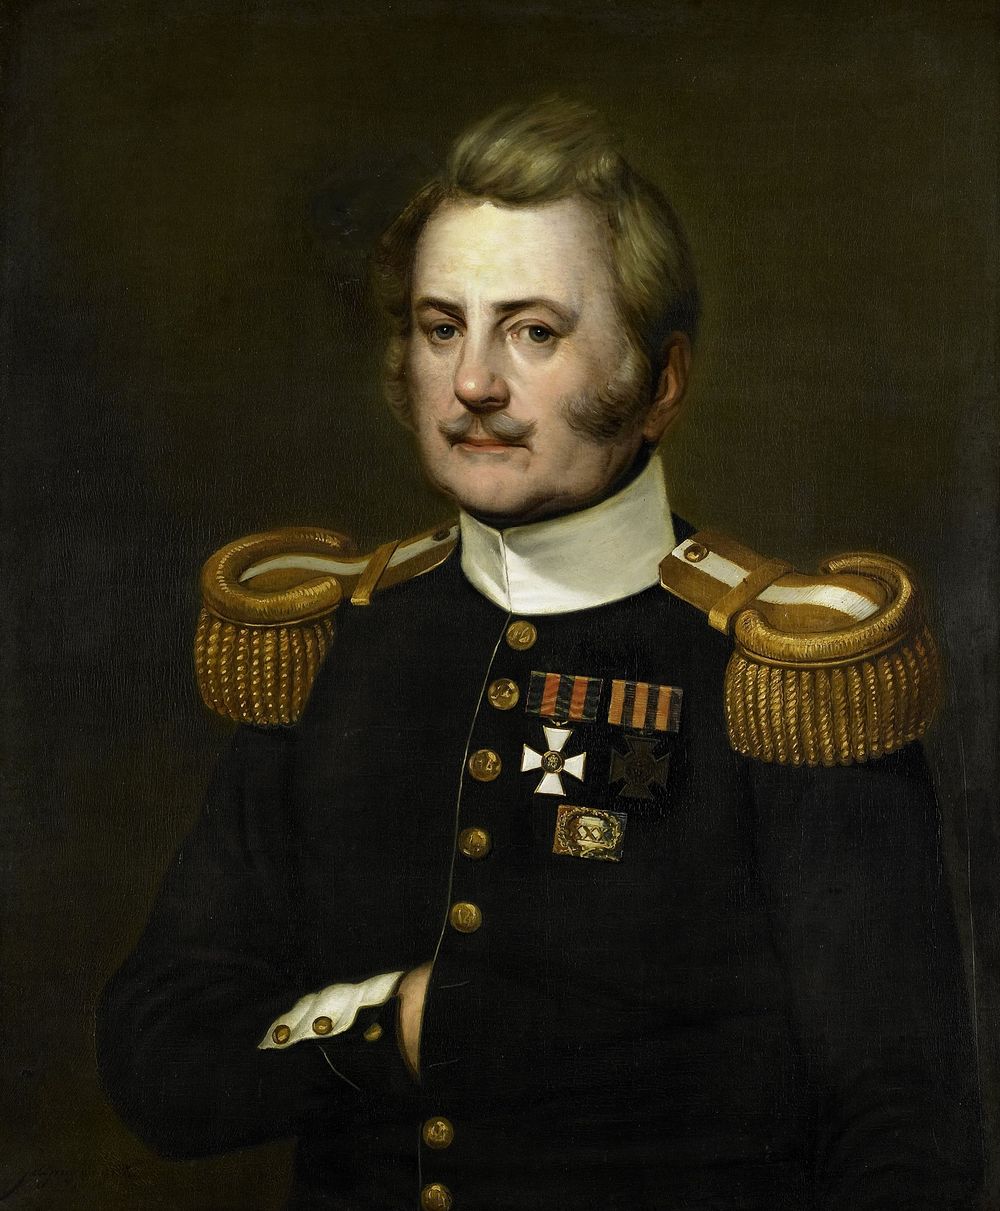 J. D. B. Wilkens, Lieutenant Colonel in the Infantry (1837) by Jurjen de Jong